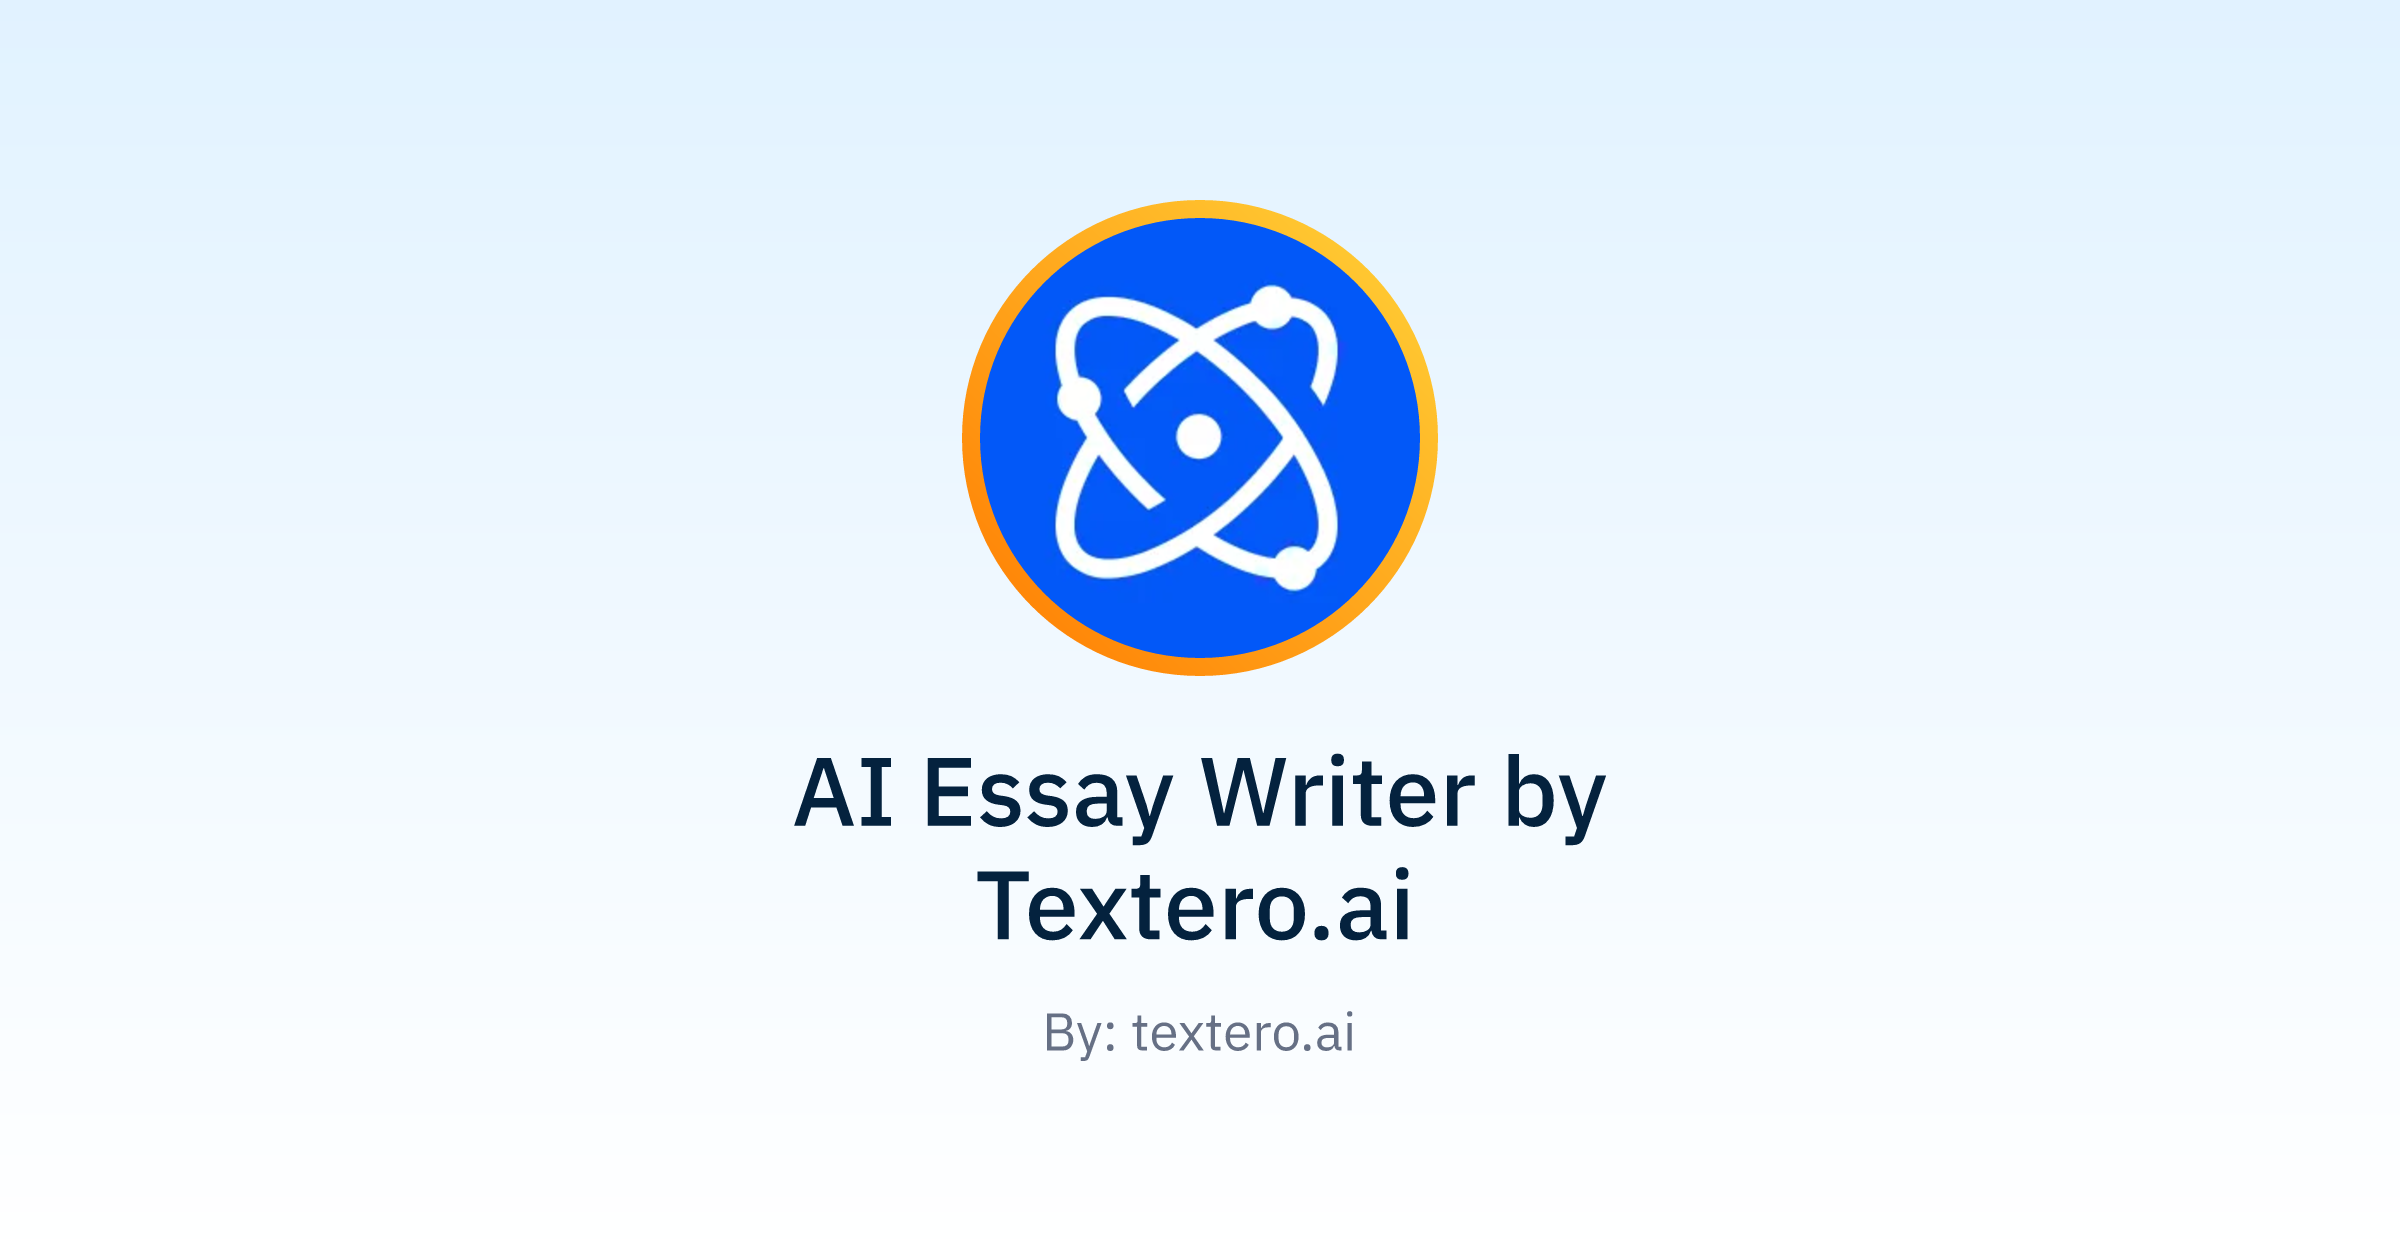 textero.ai writer logo